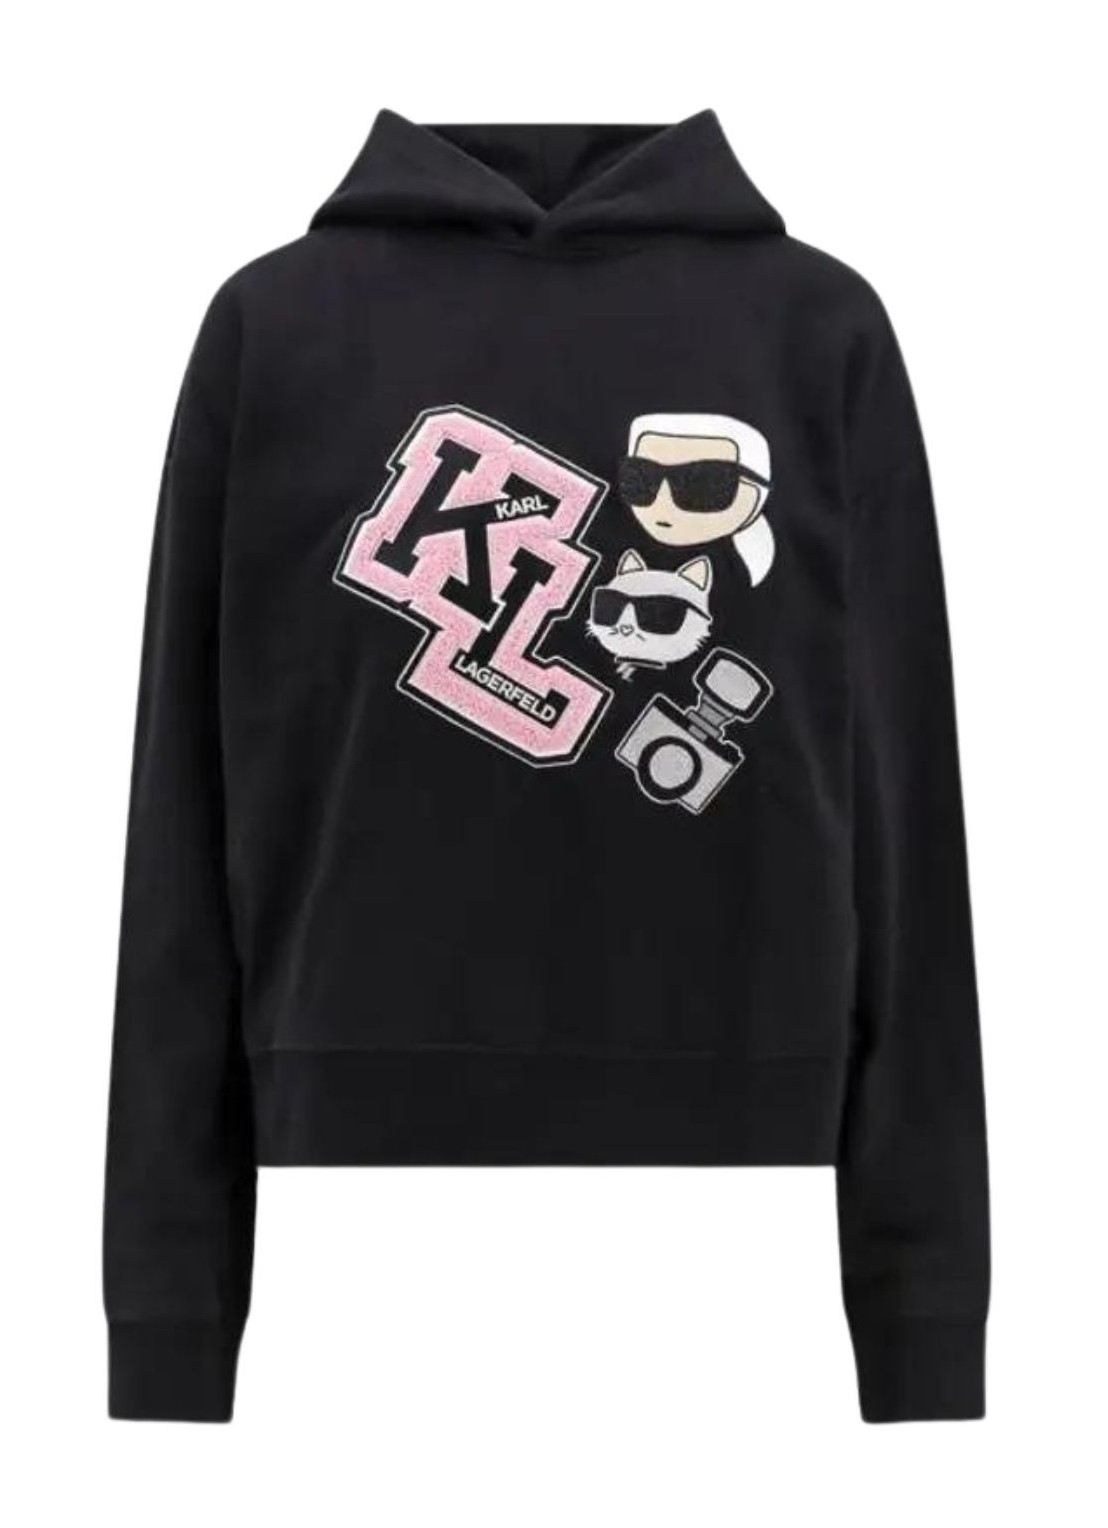 Sudadera karl lagerfeld sweater woman ikonik varsity hoodie 240w1813 999 talla M
 